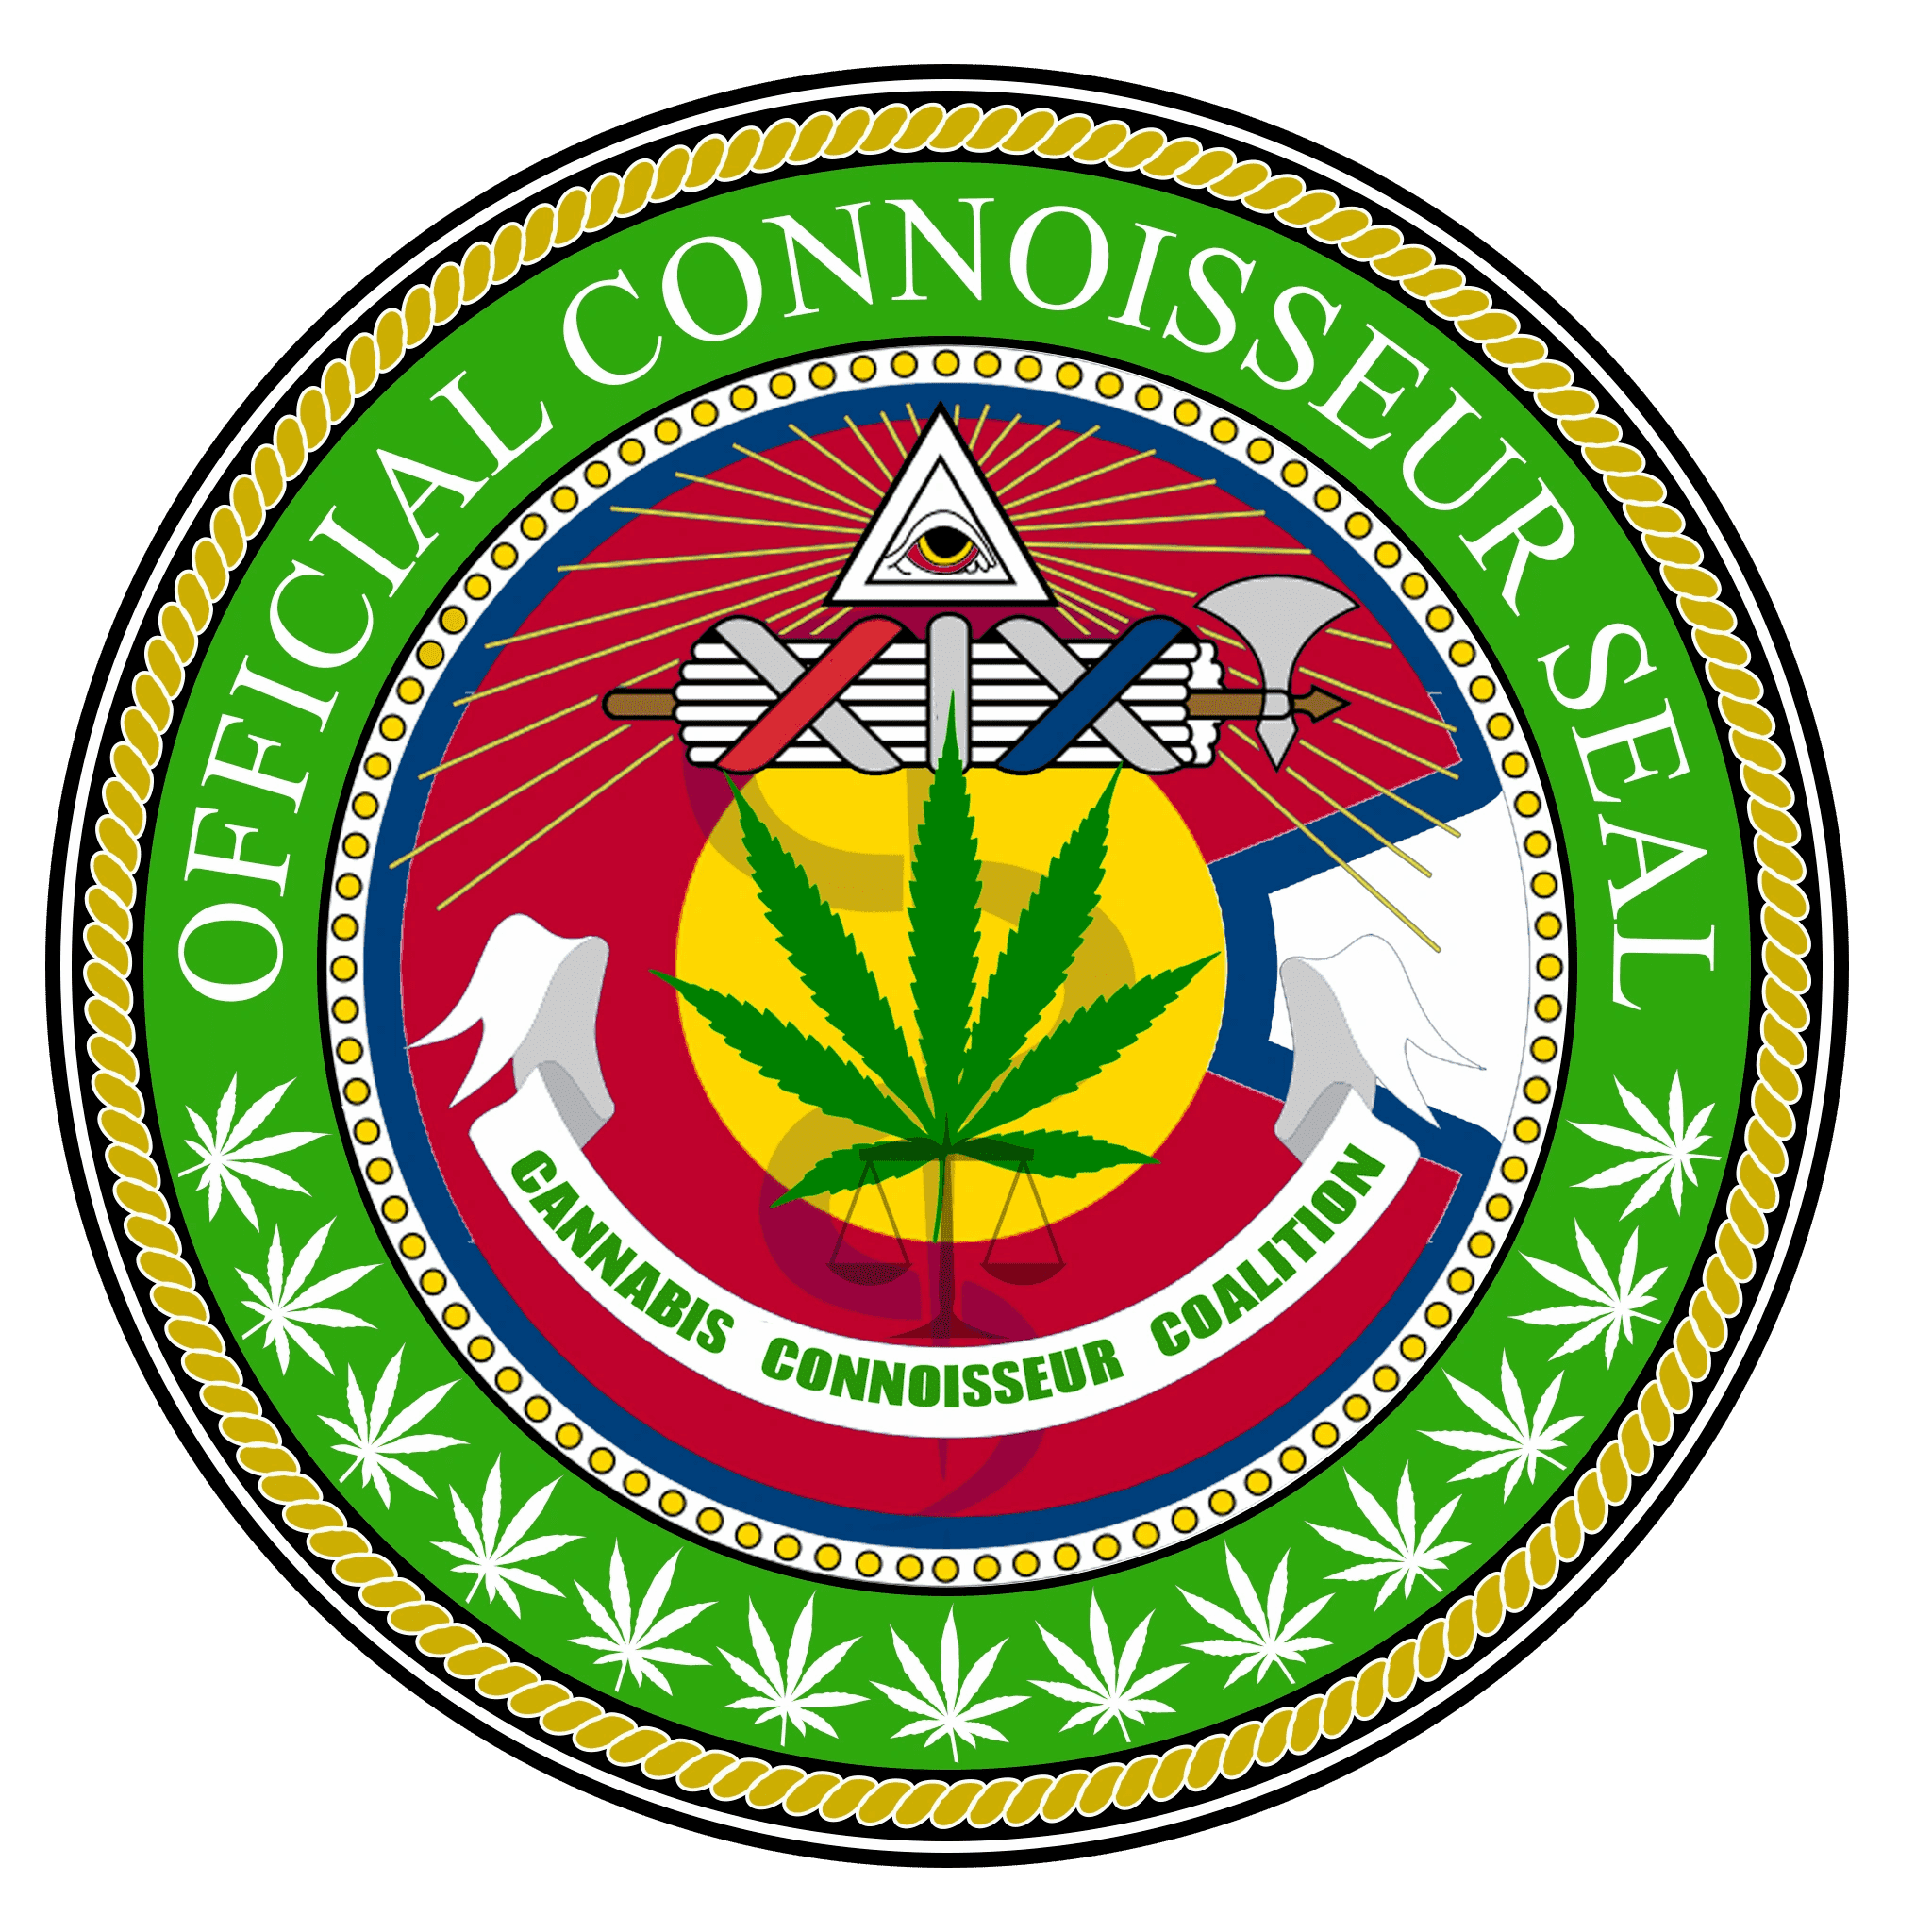 Cannabis Connoisseur Coalition Award